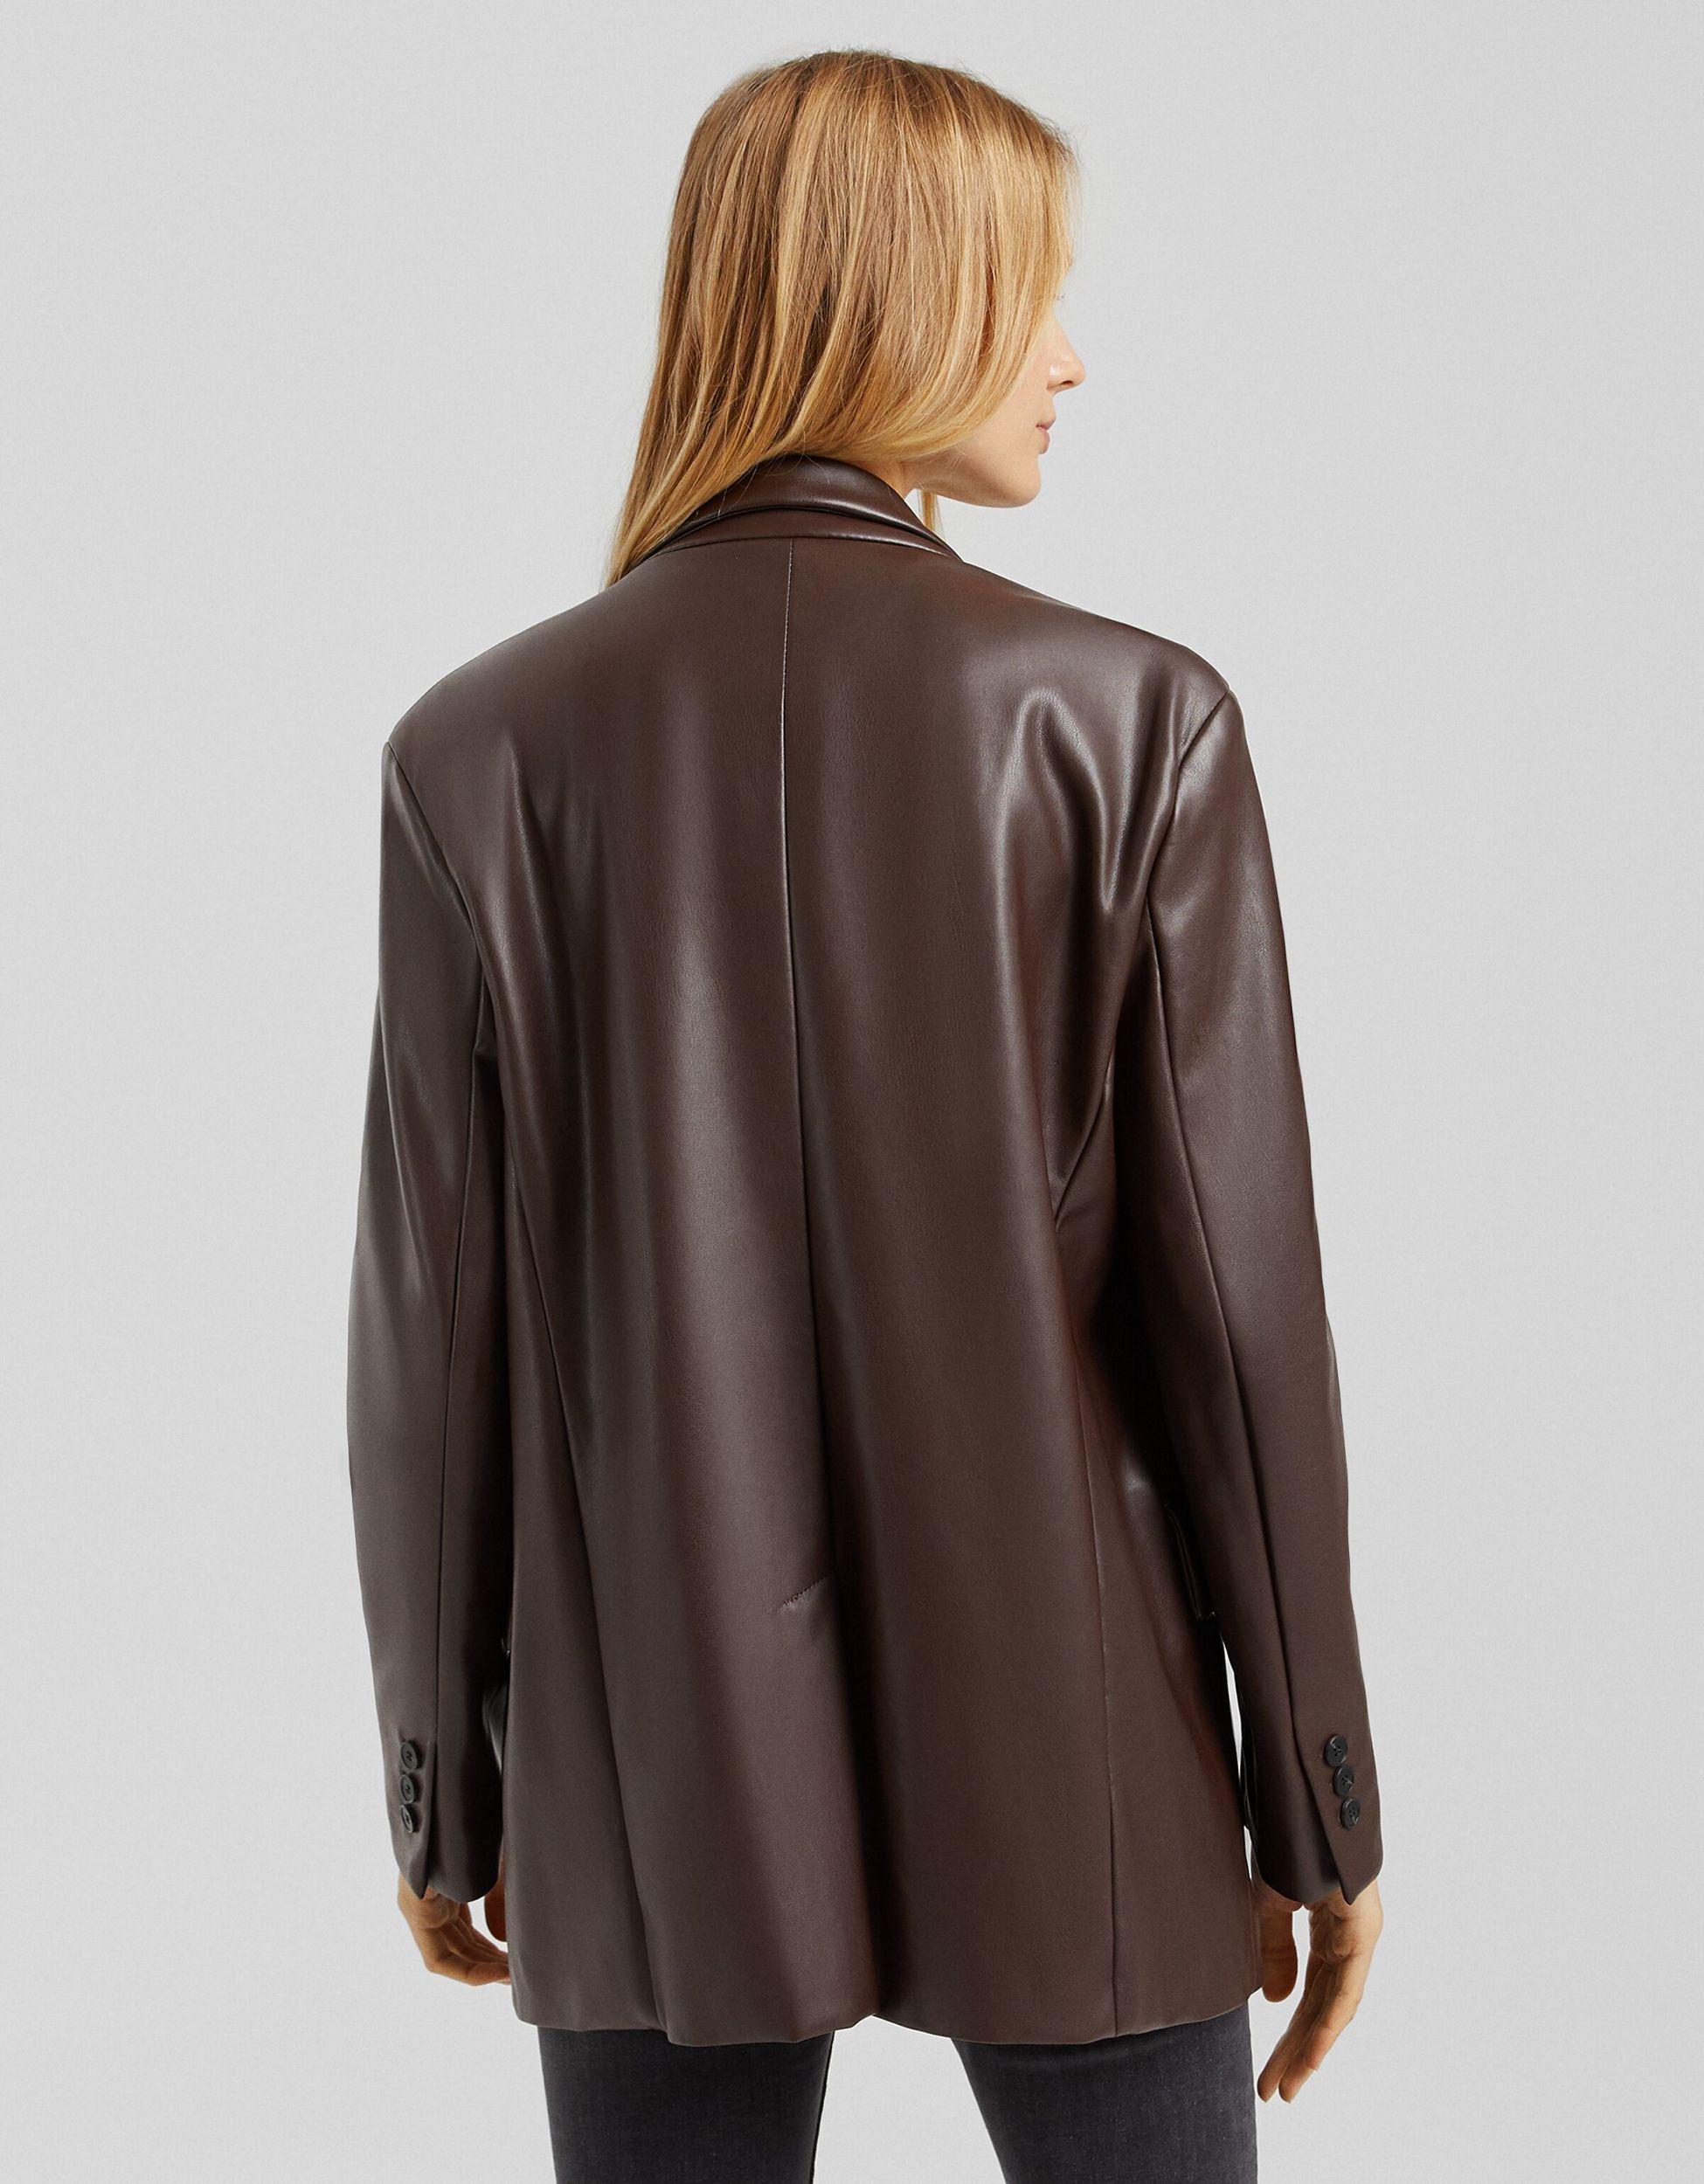 Bershka Oversized Faux Leather Blazer in Brown | Lyst